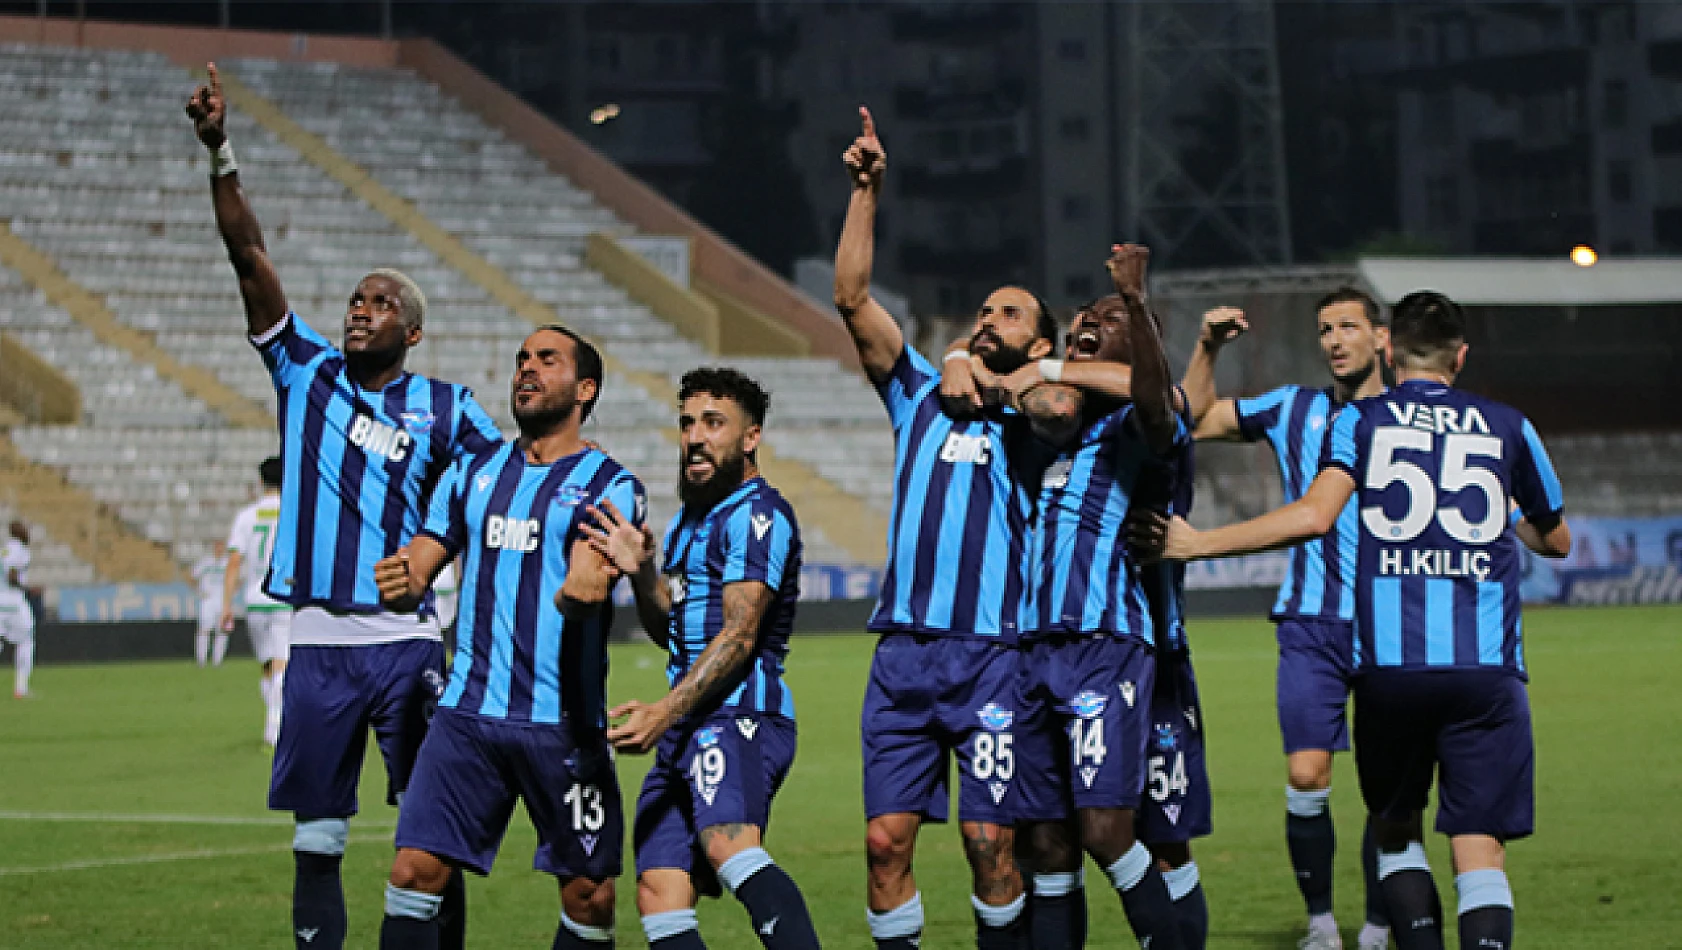 Adana Demirspor Roma ile yardım maçı düzenleyecek